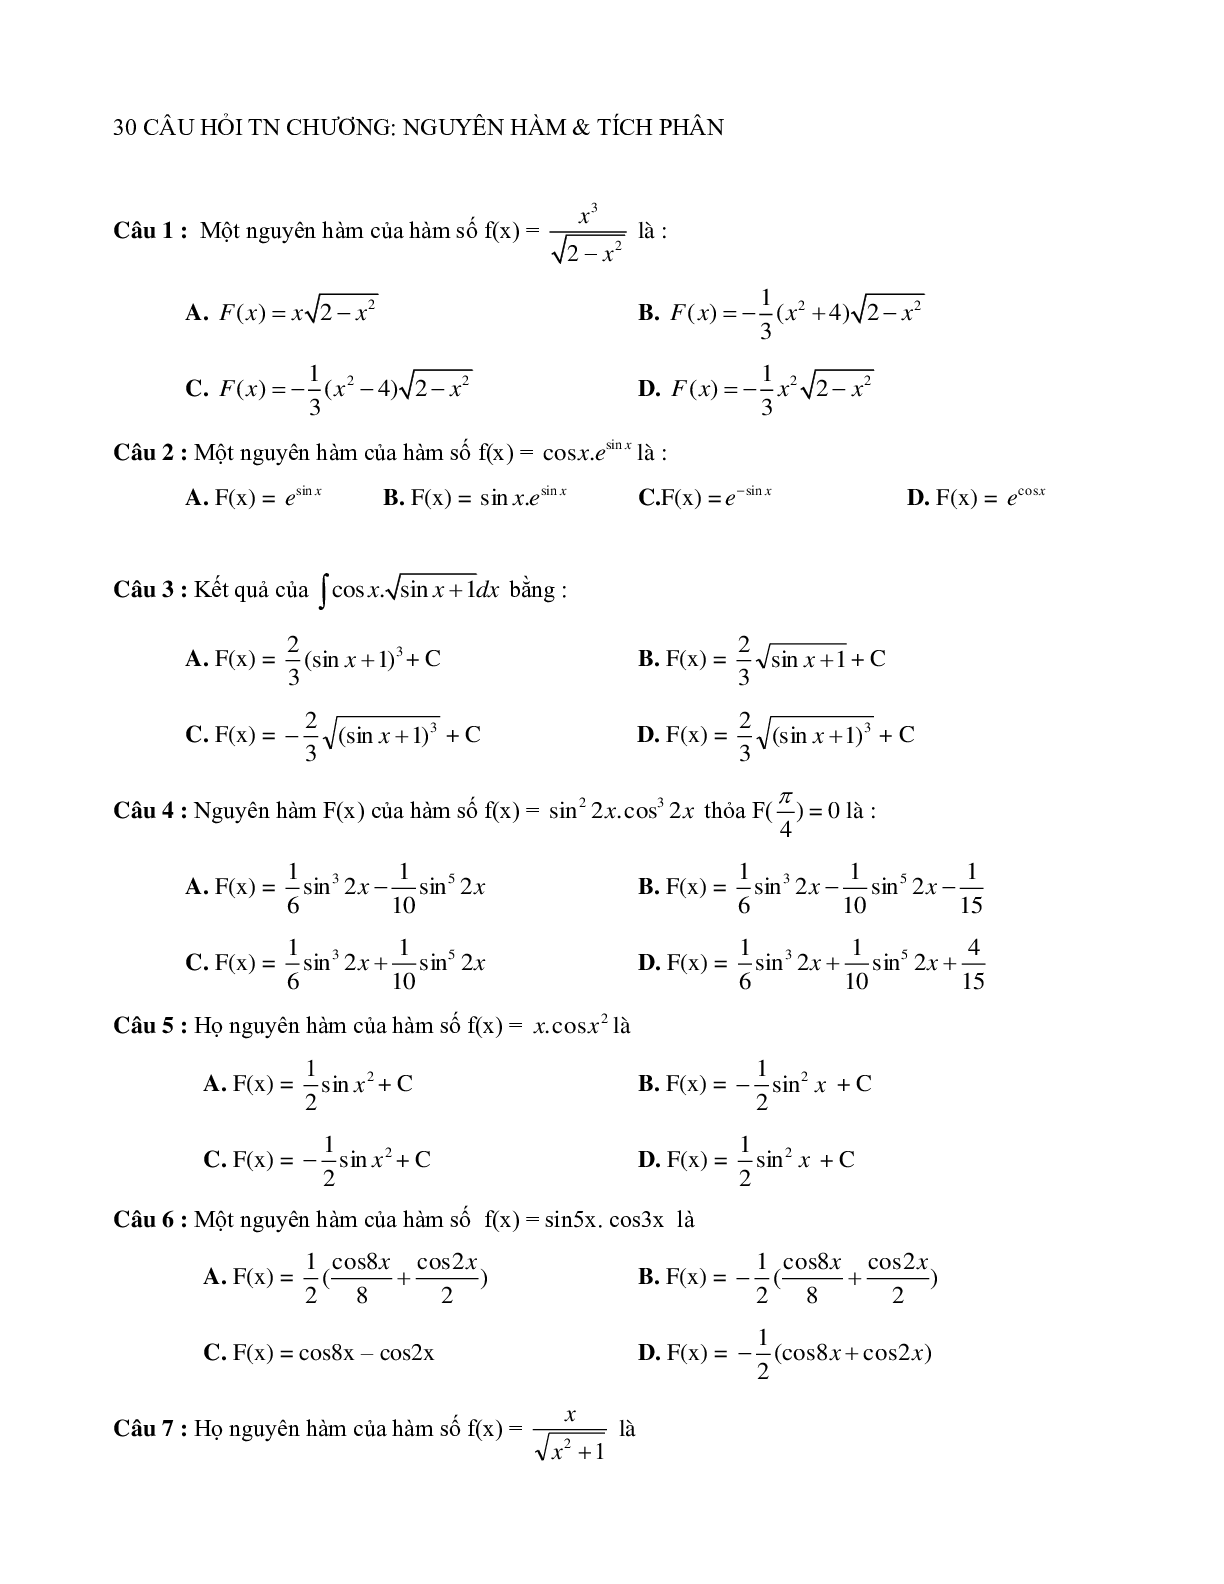 Các dạng bài tập về nguyên hàm - tích phân (có đáp án) (trang 1)